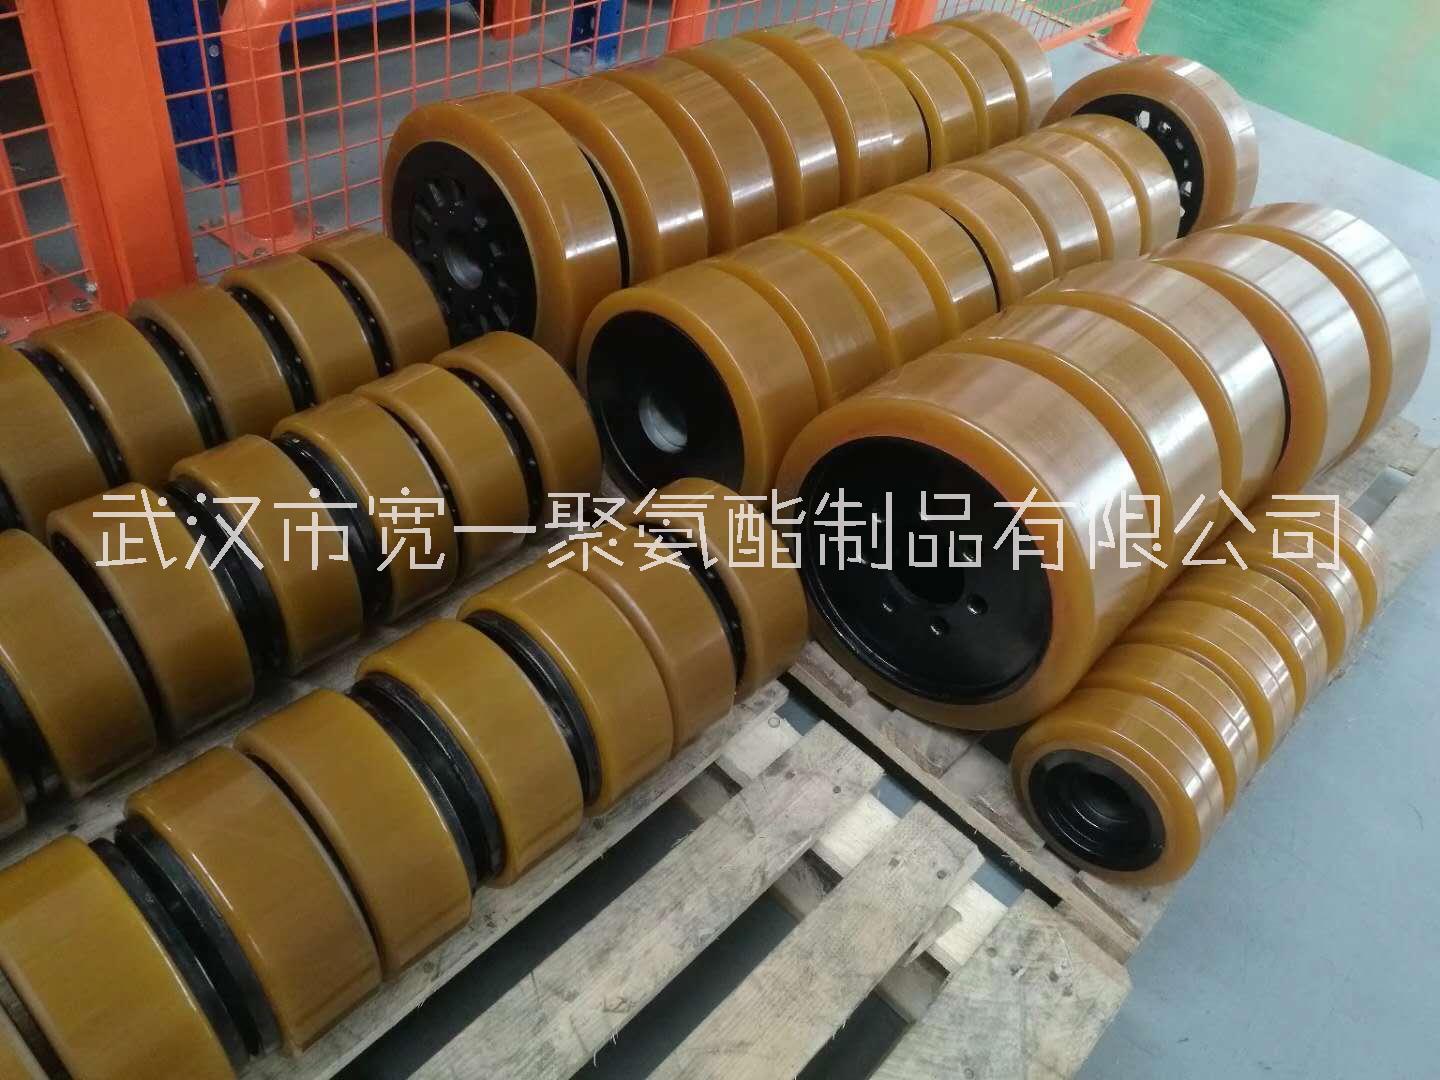 武汉包胶轮，湖北武汉聚氨酯胶轮专业生产加工厂家